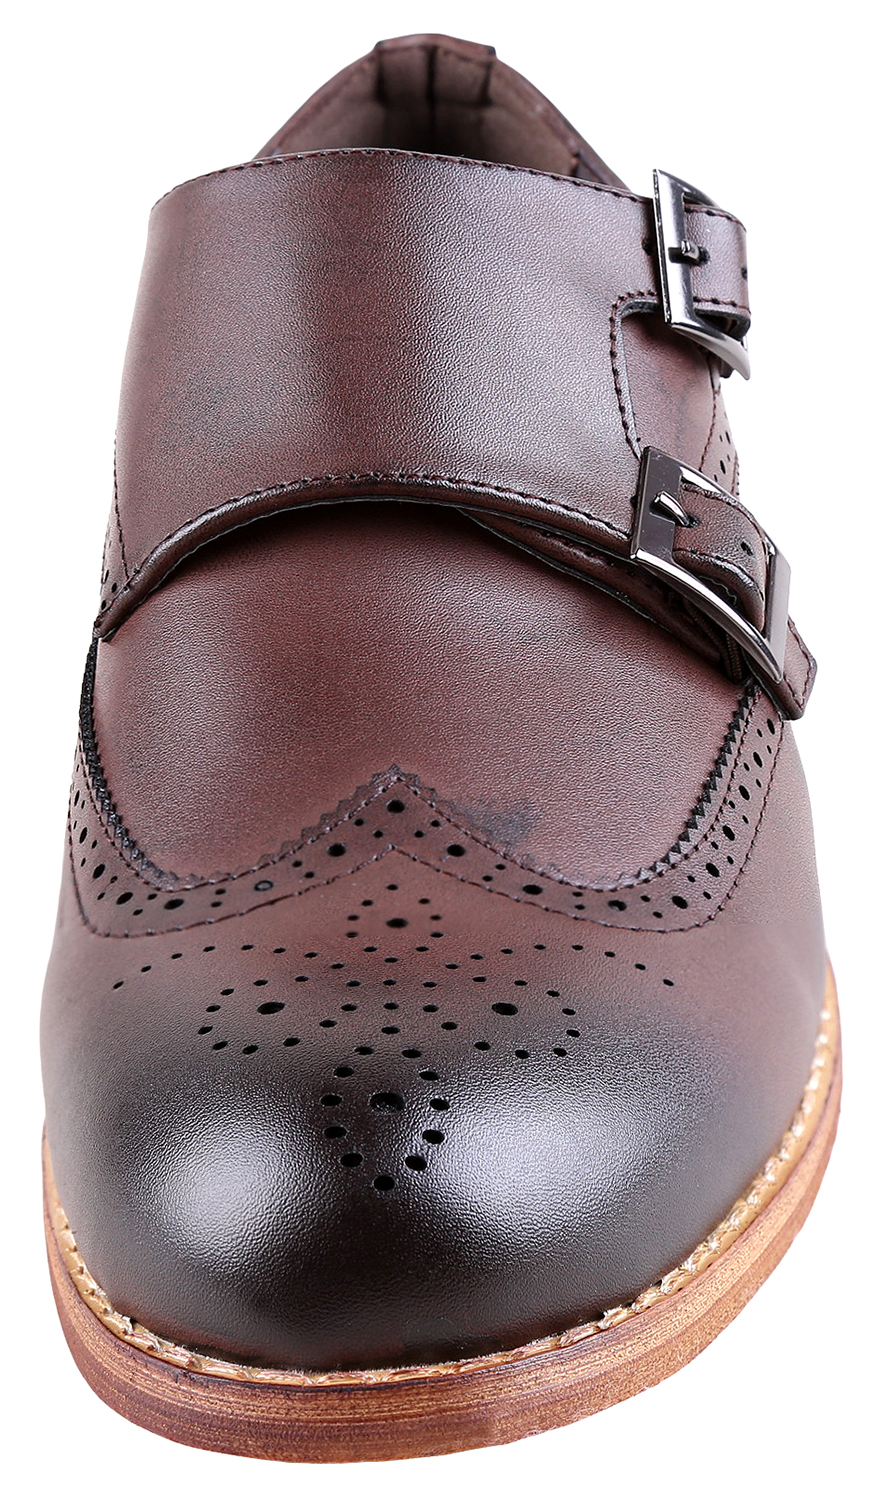 Urban Fox Allen Men's Dress Shoe | Double Monk Strap | Brogue | Wingtip Shoes for Men | Dark Brown 10 M US - image 3 of 7